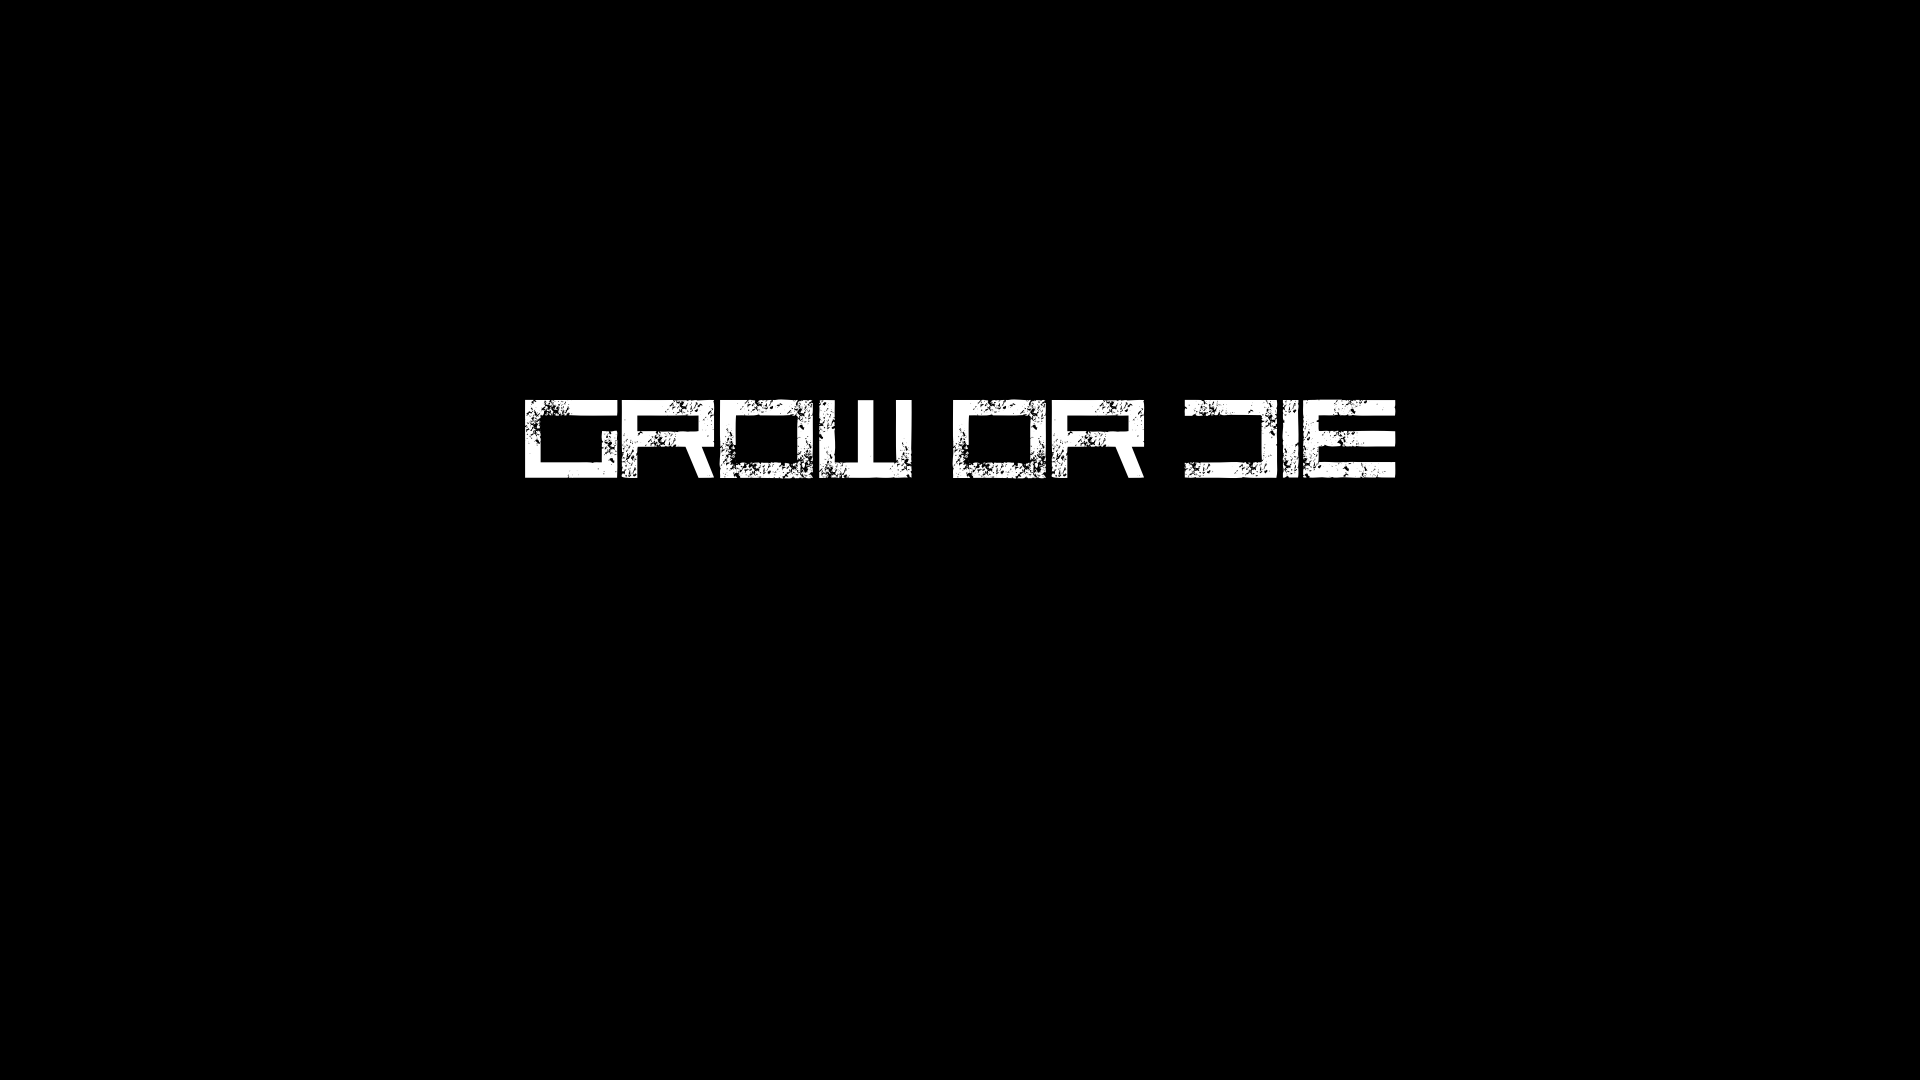 Grow or Die